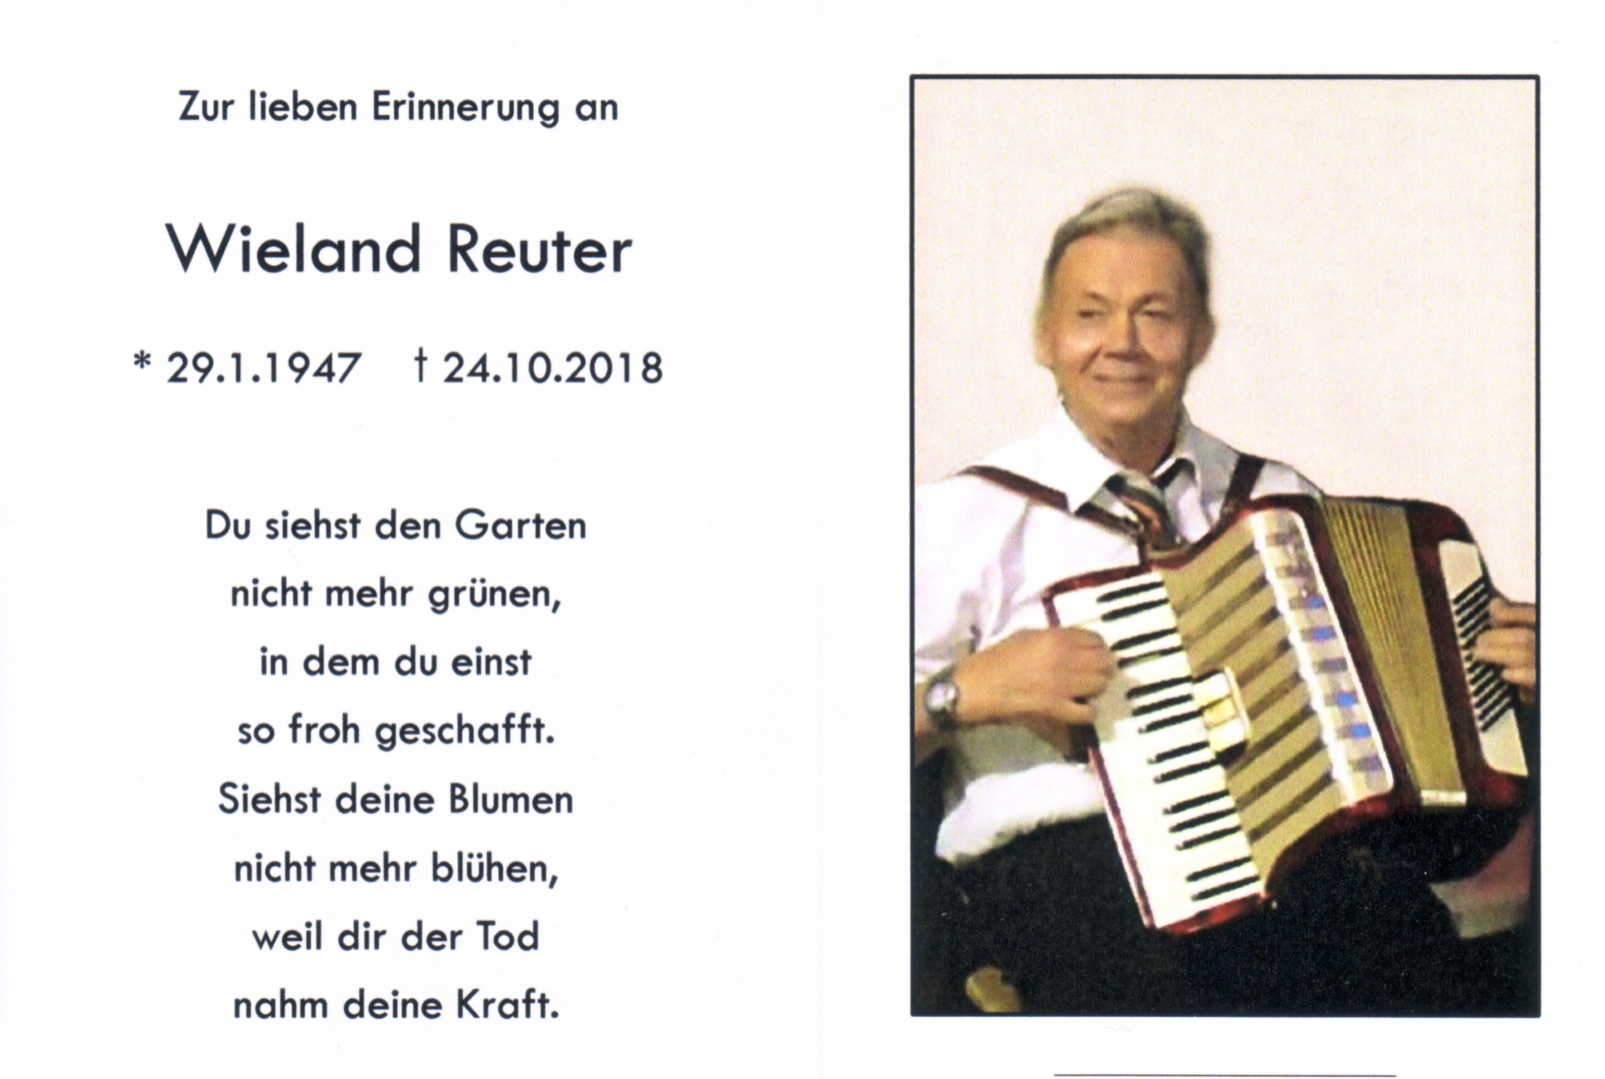 Wieland Reuter